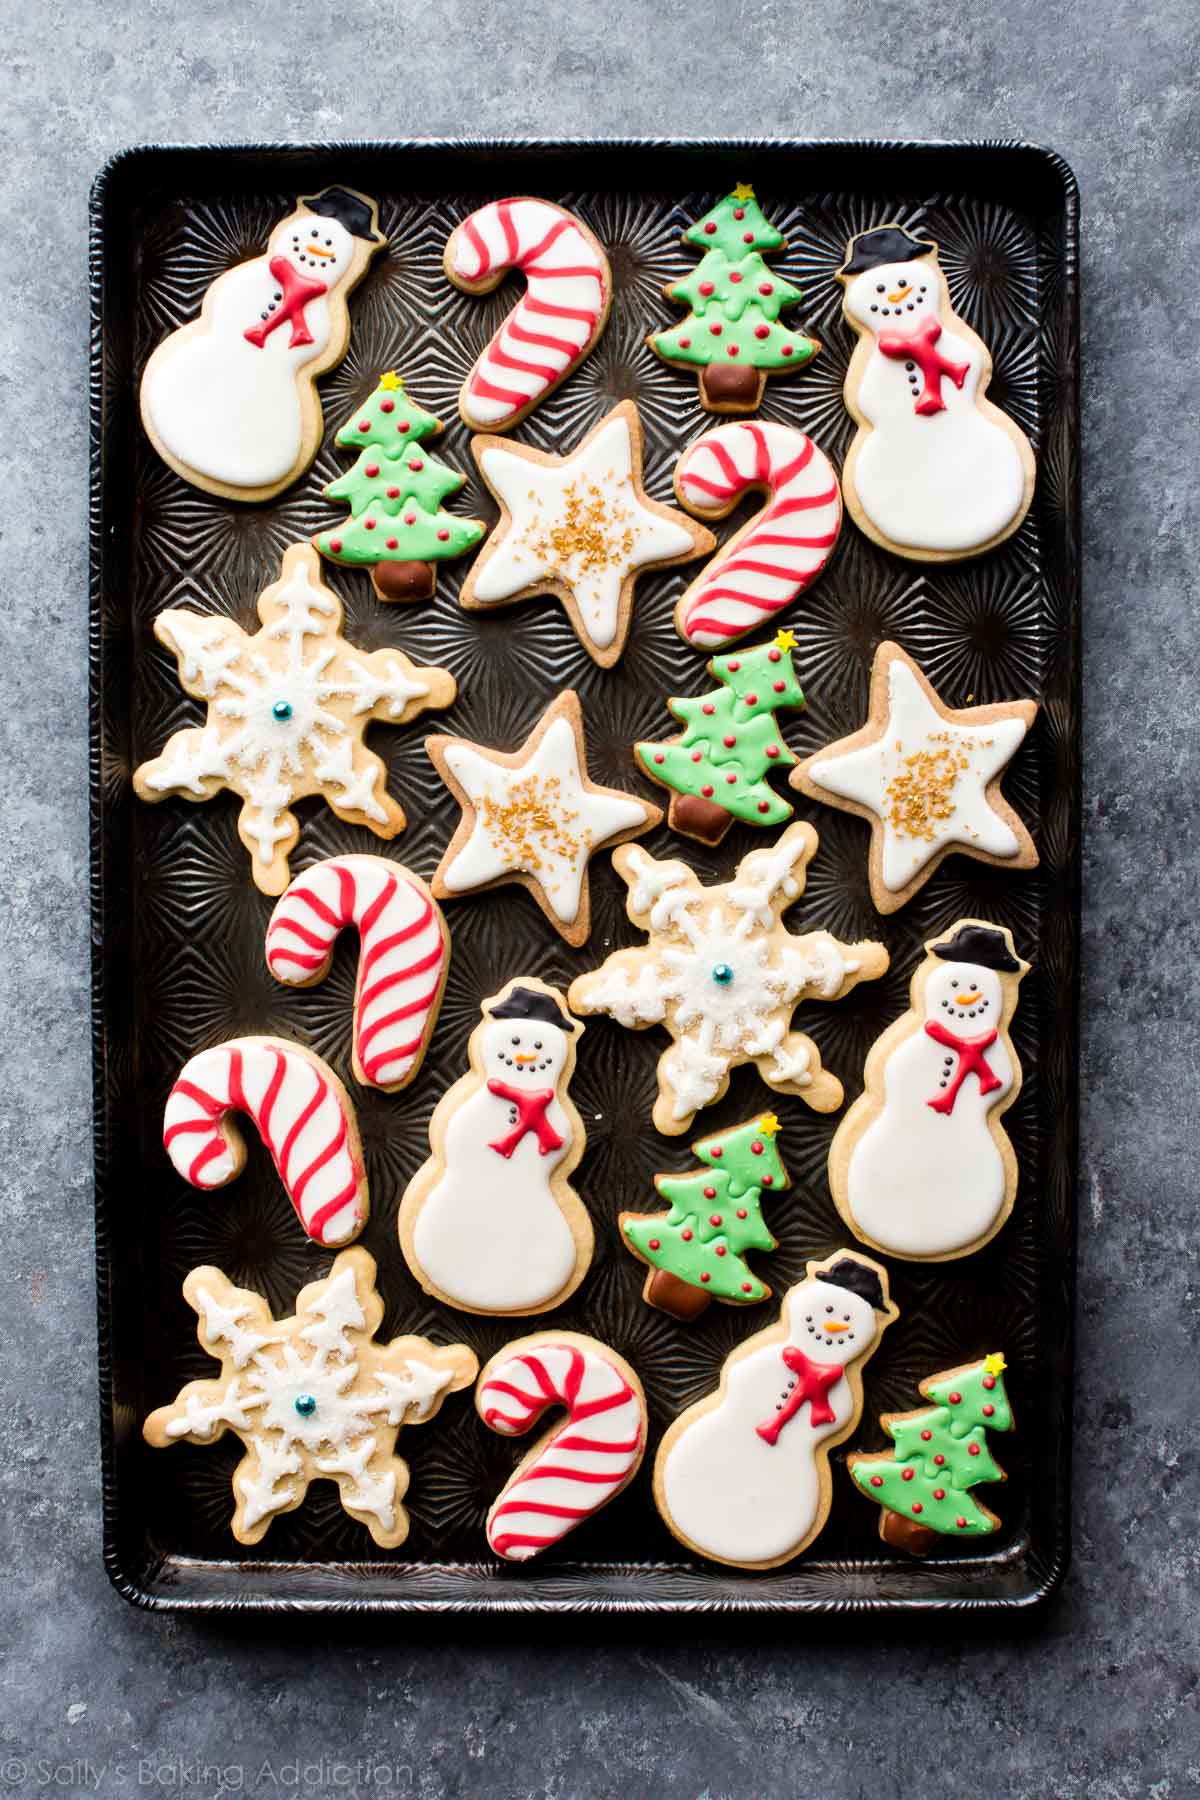 Comment décorer des biscuits au sucre - Recettes du Monde